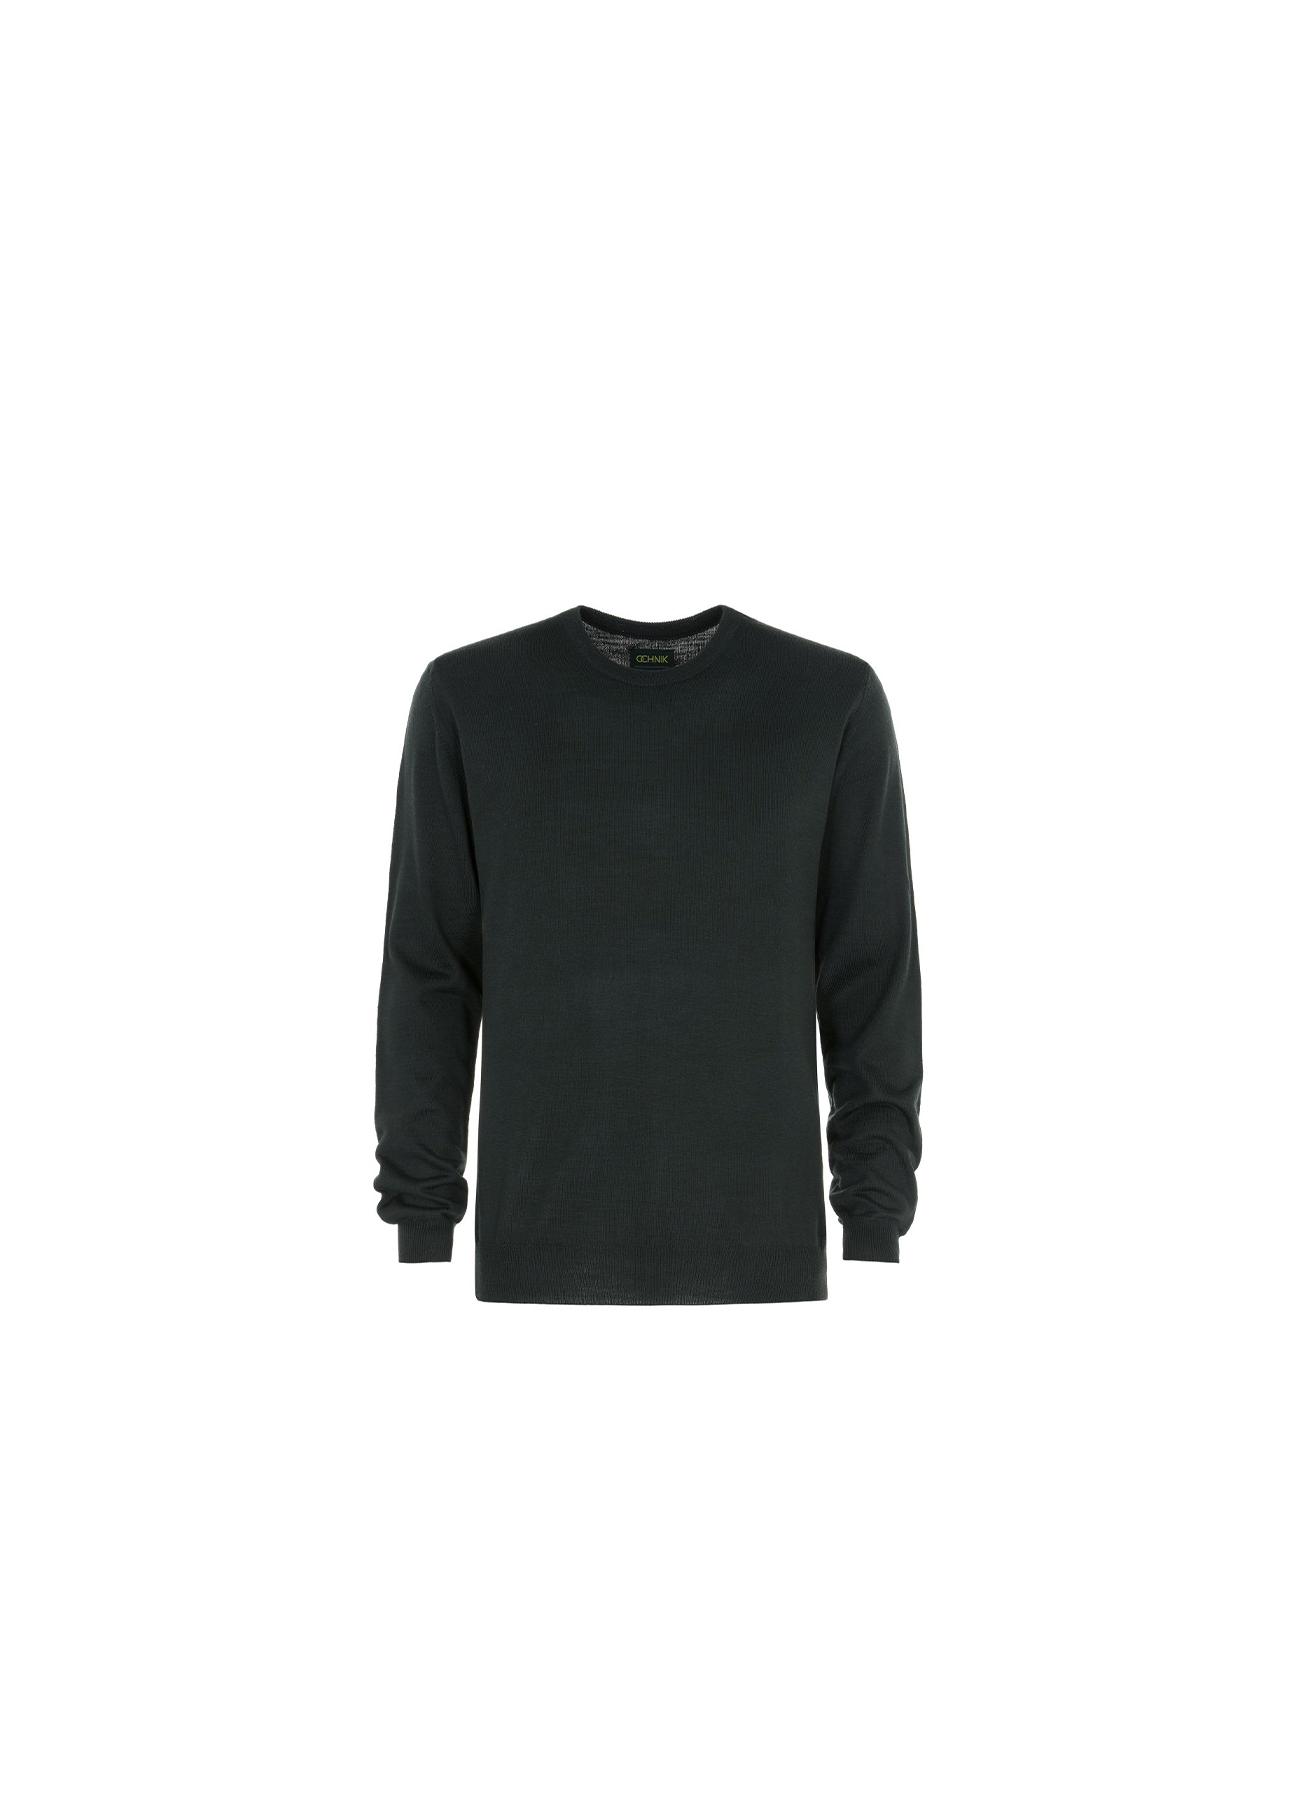 Sweter męski SWEMT-0089-51(Z20)